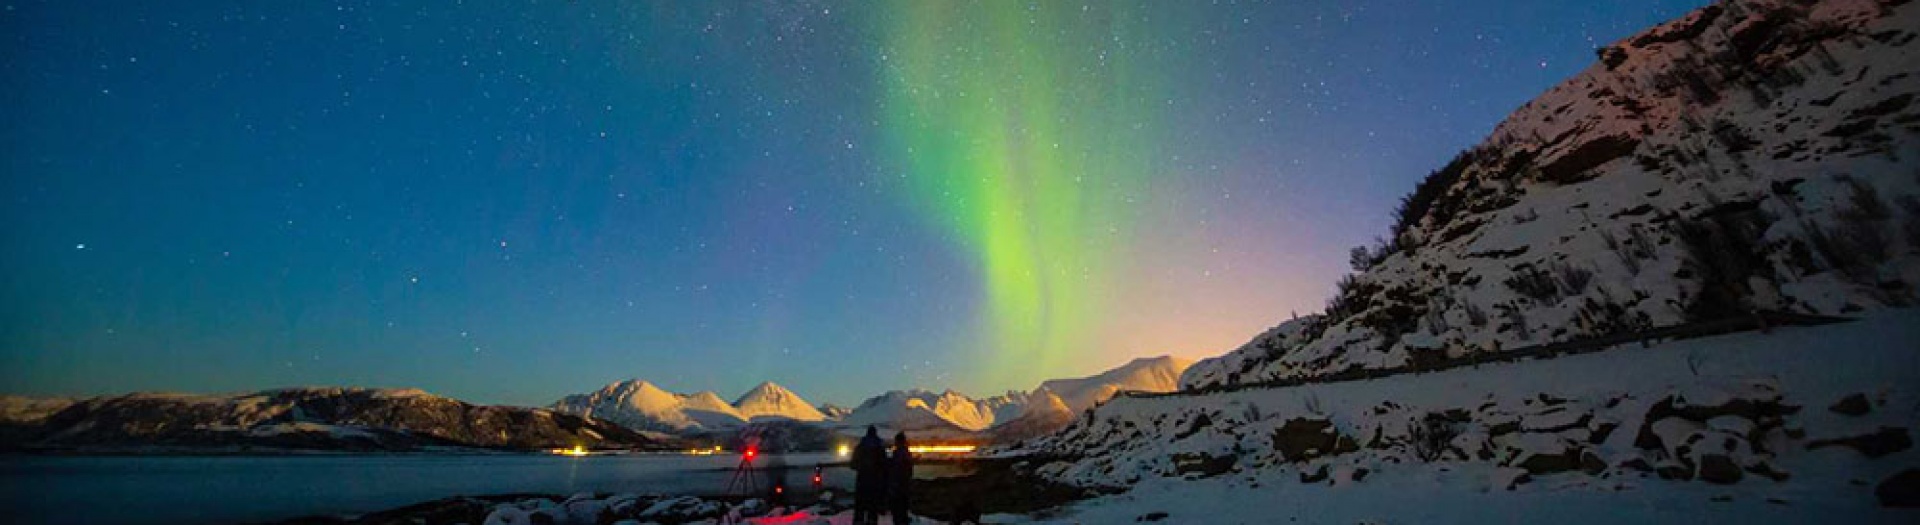 Tromsø : multi-activités hivernales & aurores boréales